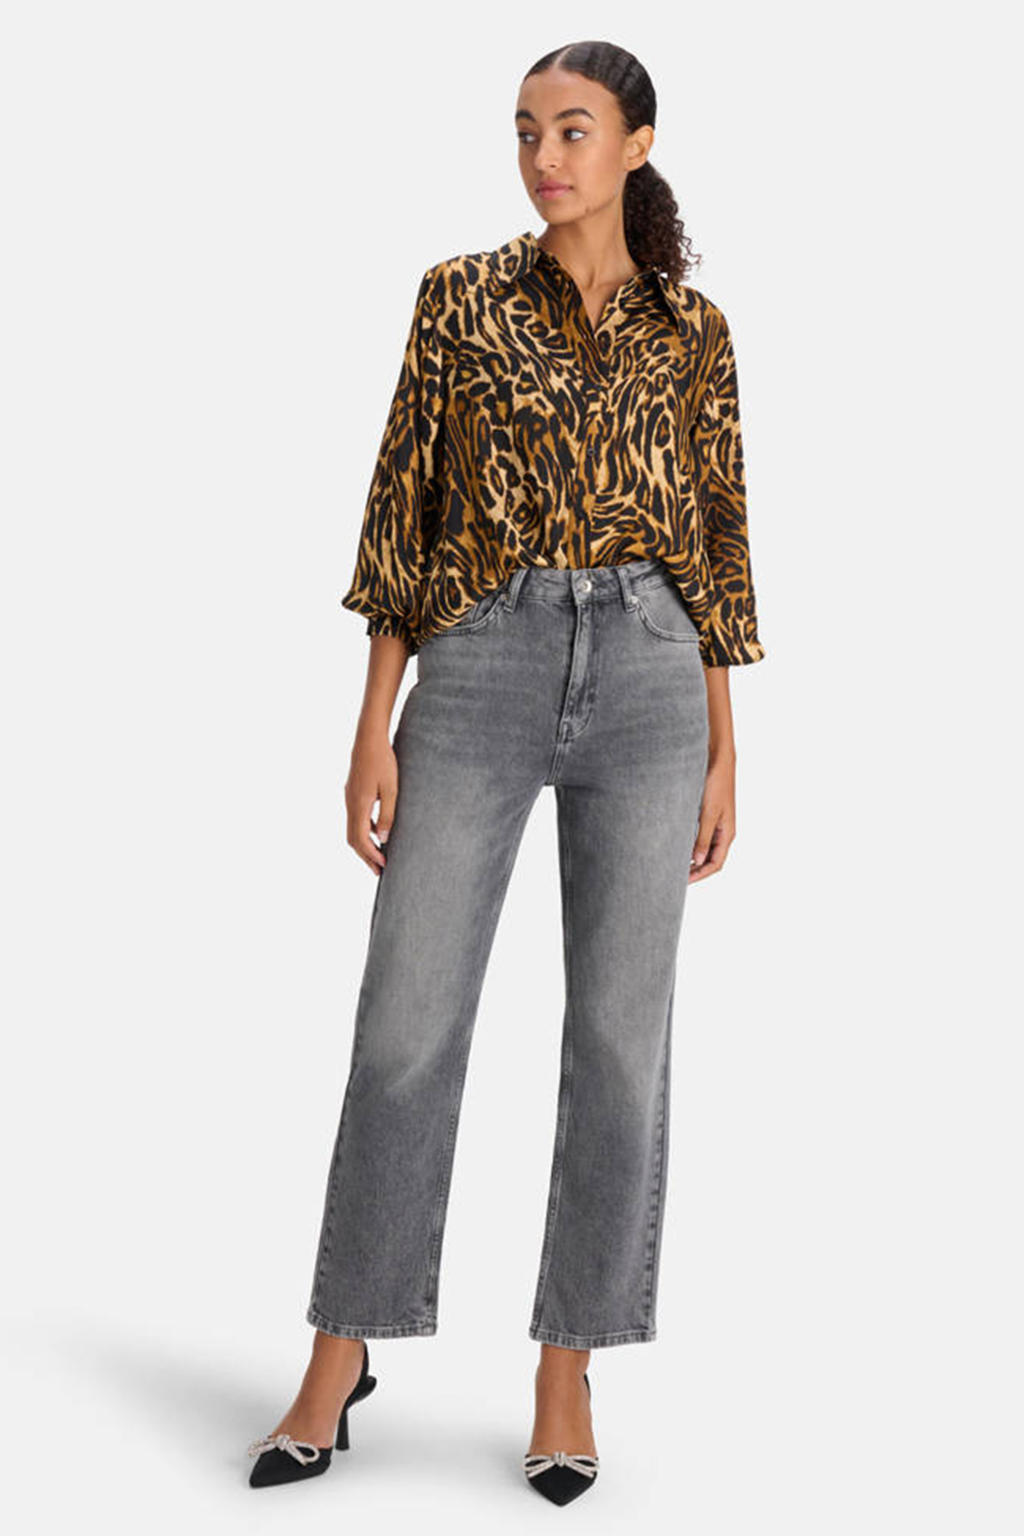 Bruine dames Shoeby blouse Satin leopard van viscose met dierenprint, lange mouwen, klassieke kraag en knoopsluiting